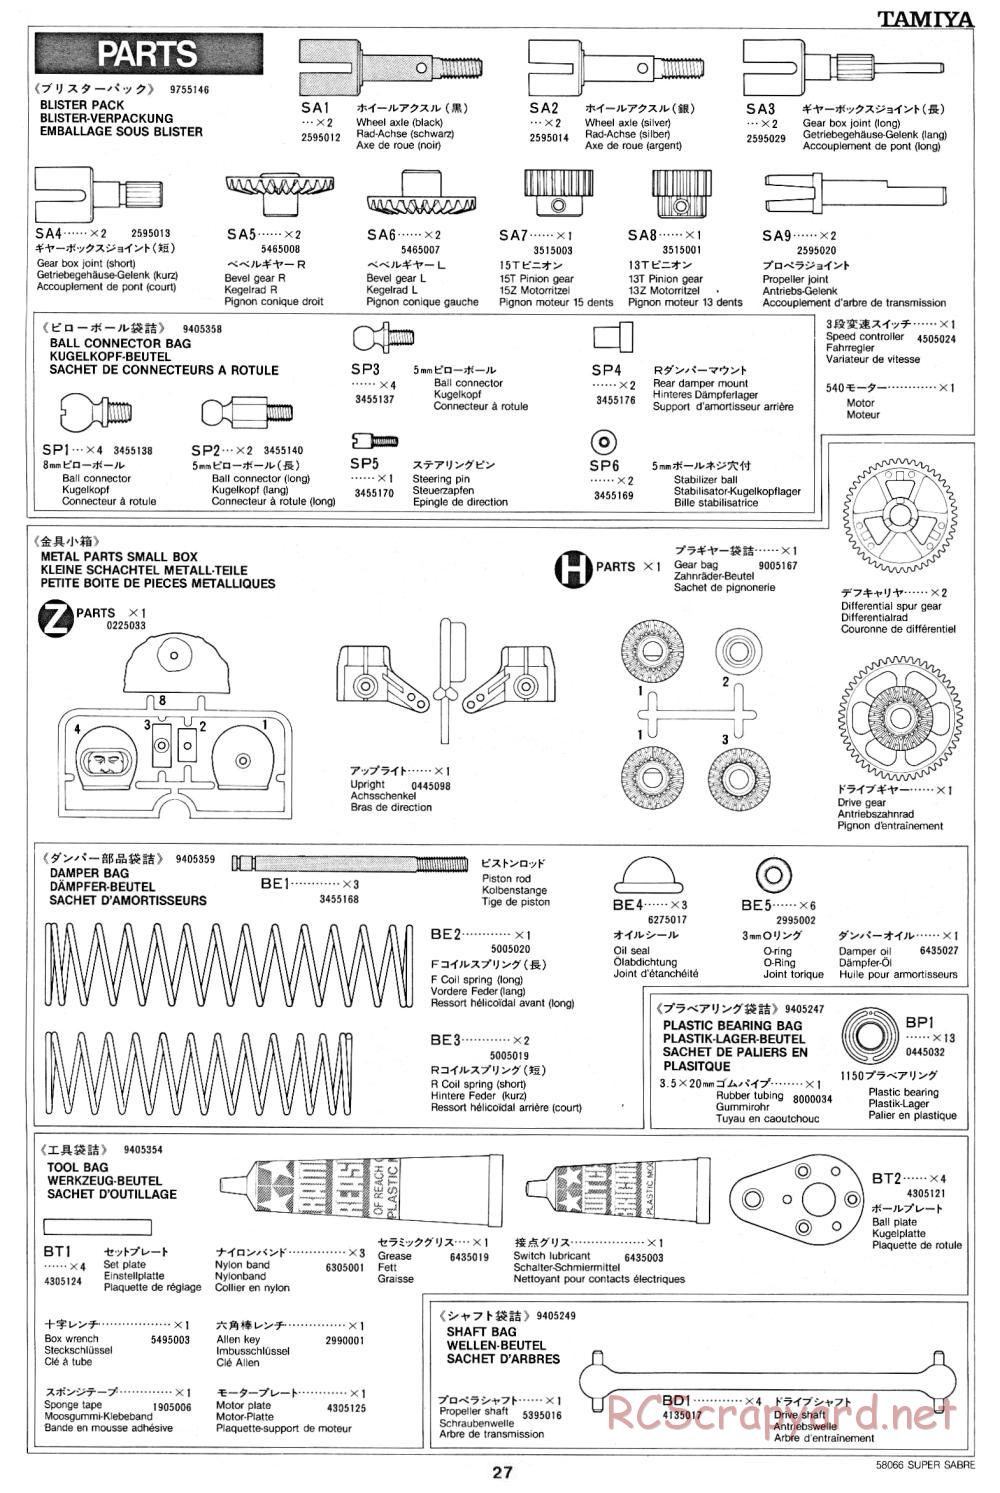 Tamiya - Super Sabre - 58066 - Manual - Page 27